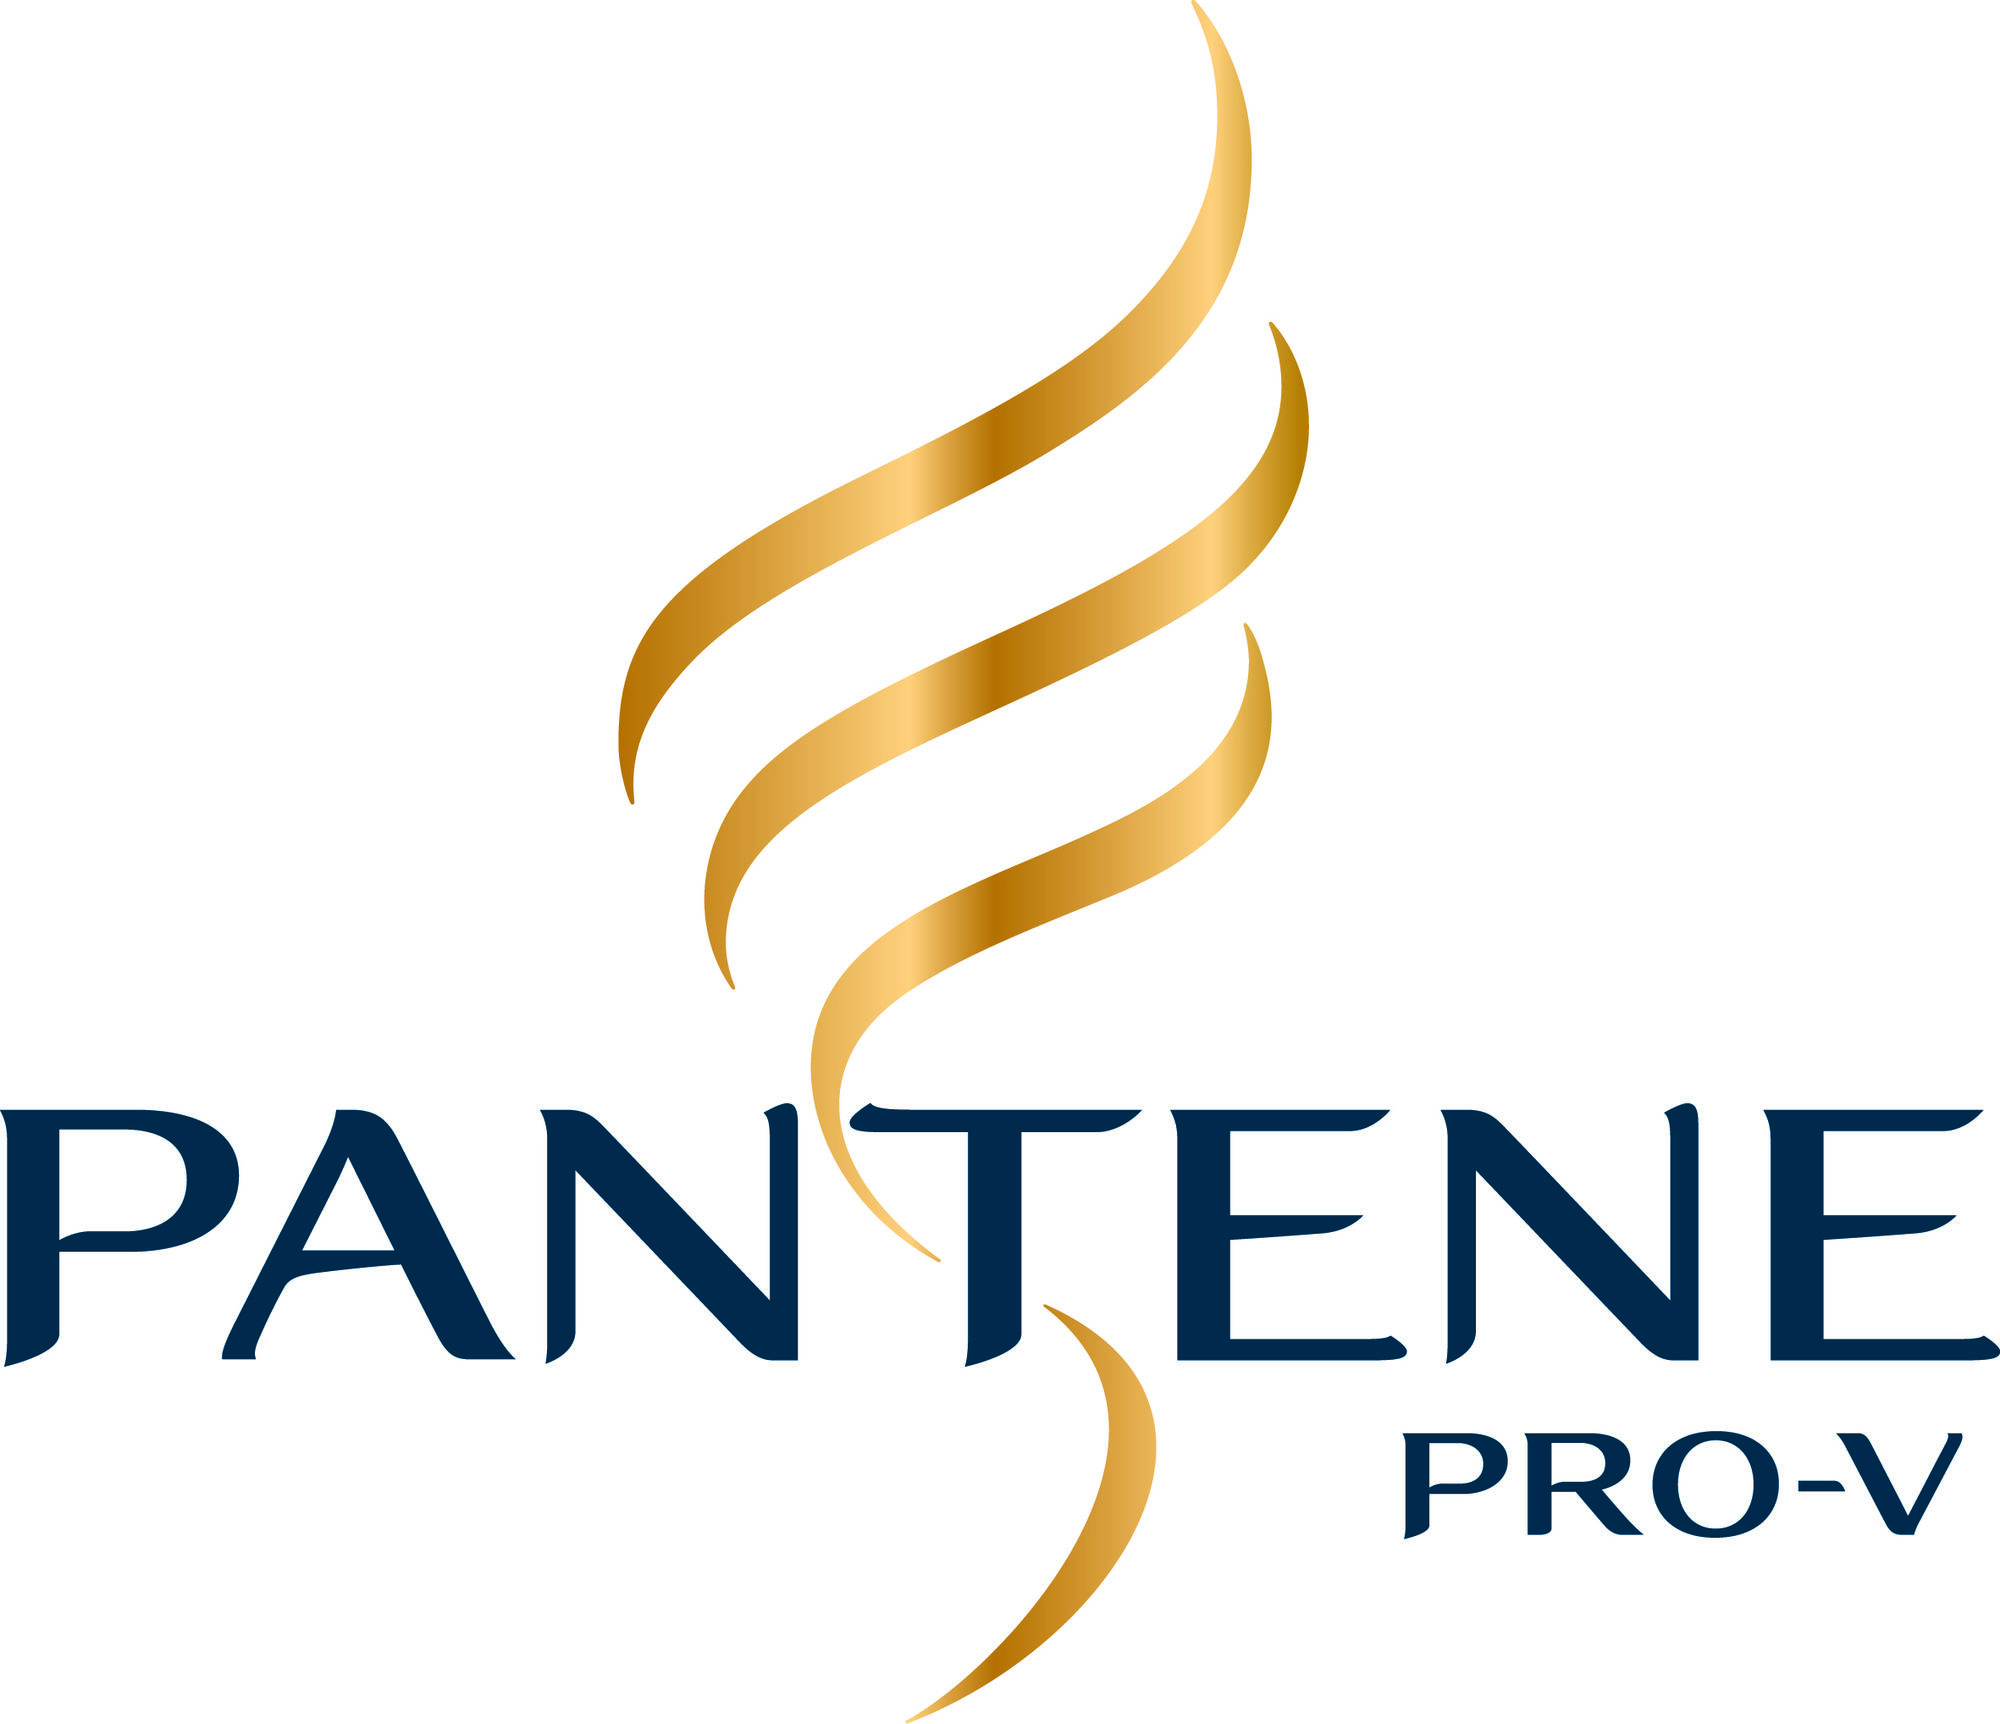 Pantene logo 11 09